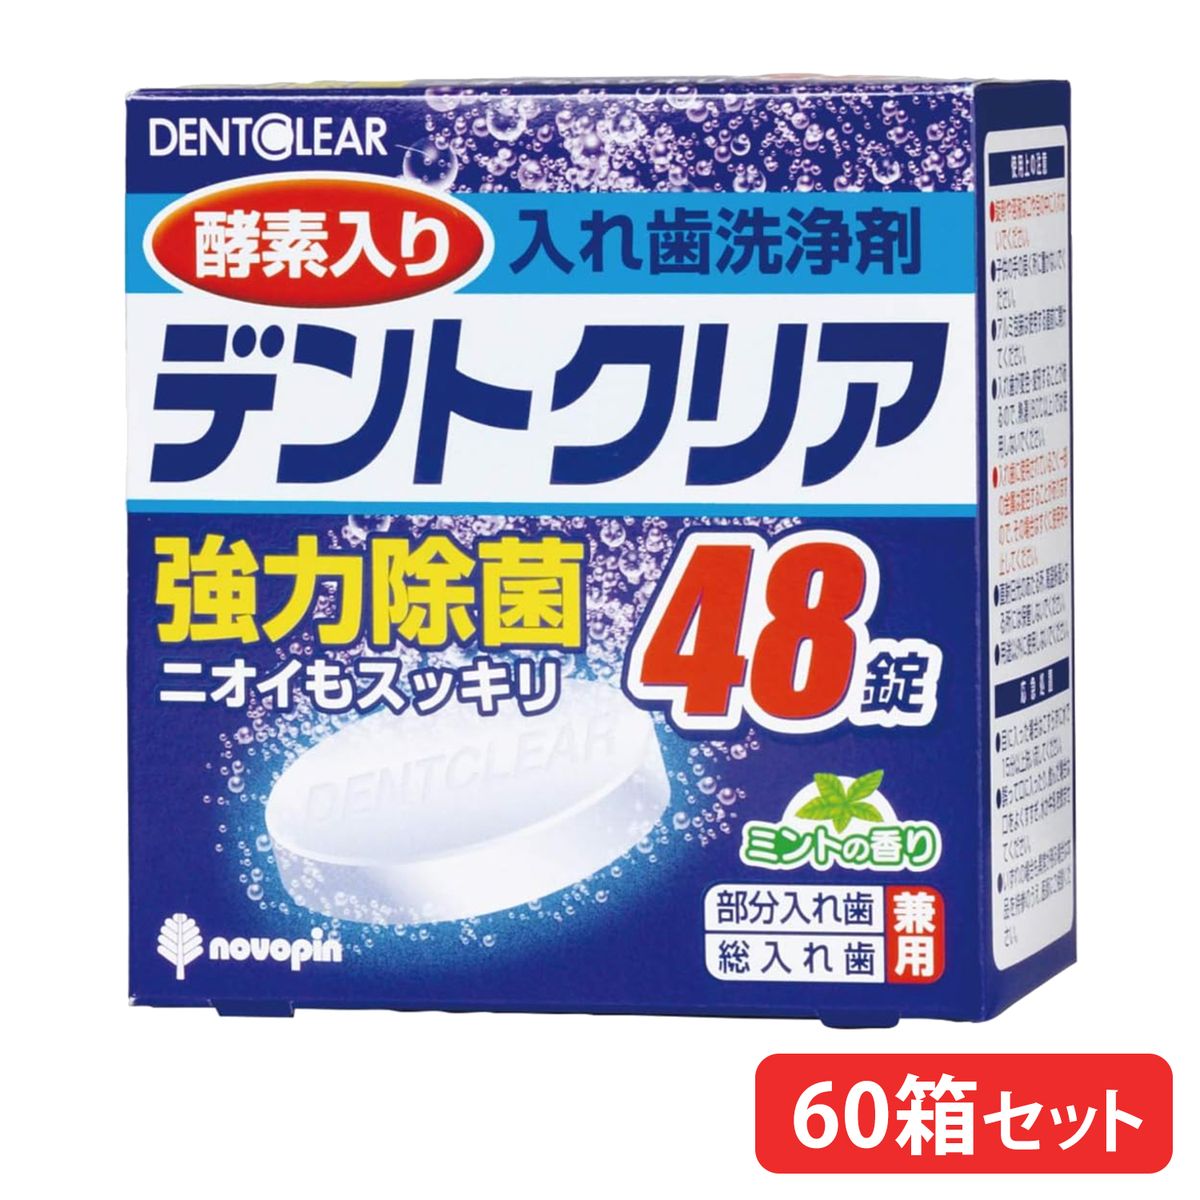 【60箱まとめ買い】入れ歯洗浄剤 デントクリア 48錠